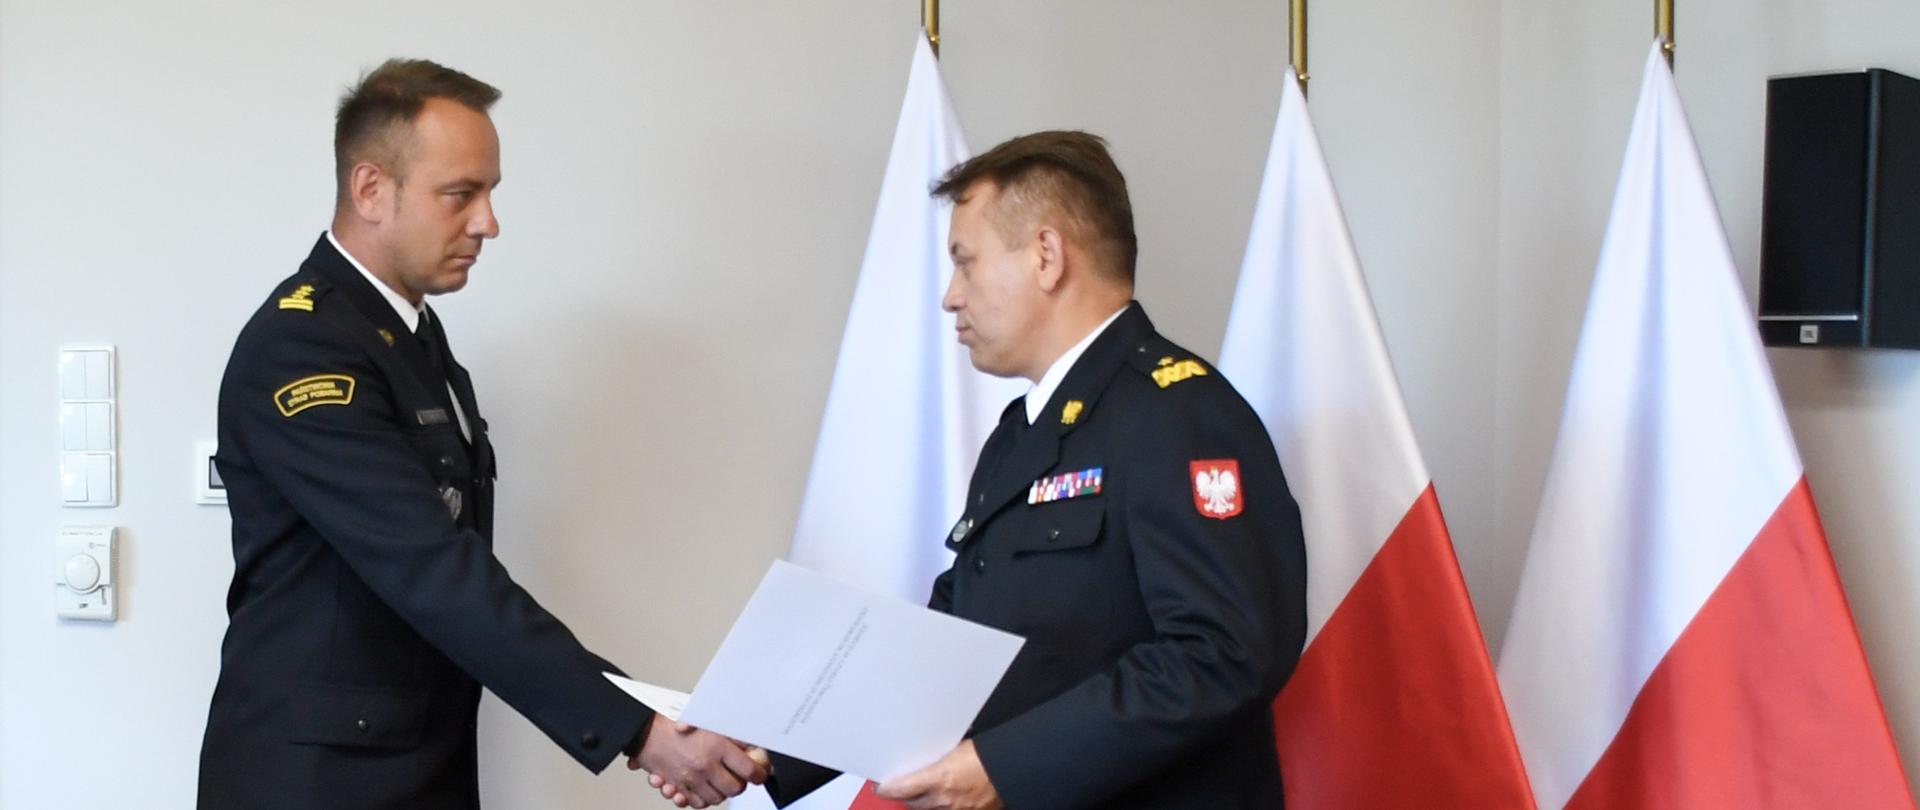 Starszy brygadier Musiał przyjmuje akt powołania z rąk nadbrygadiera Jarosława Nowosielskiego